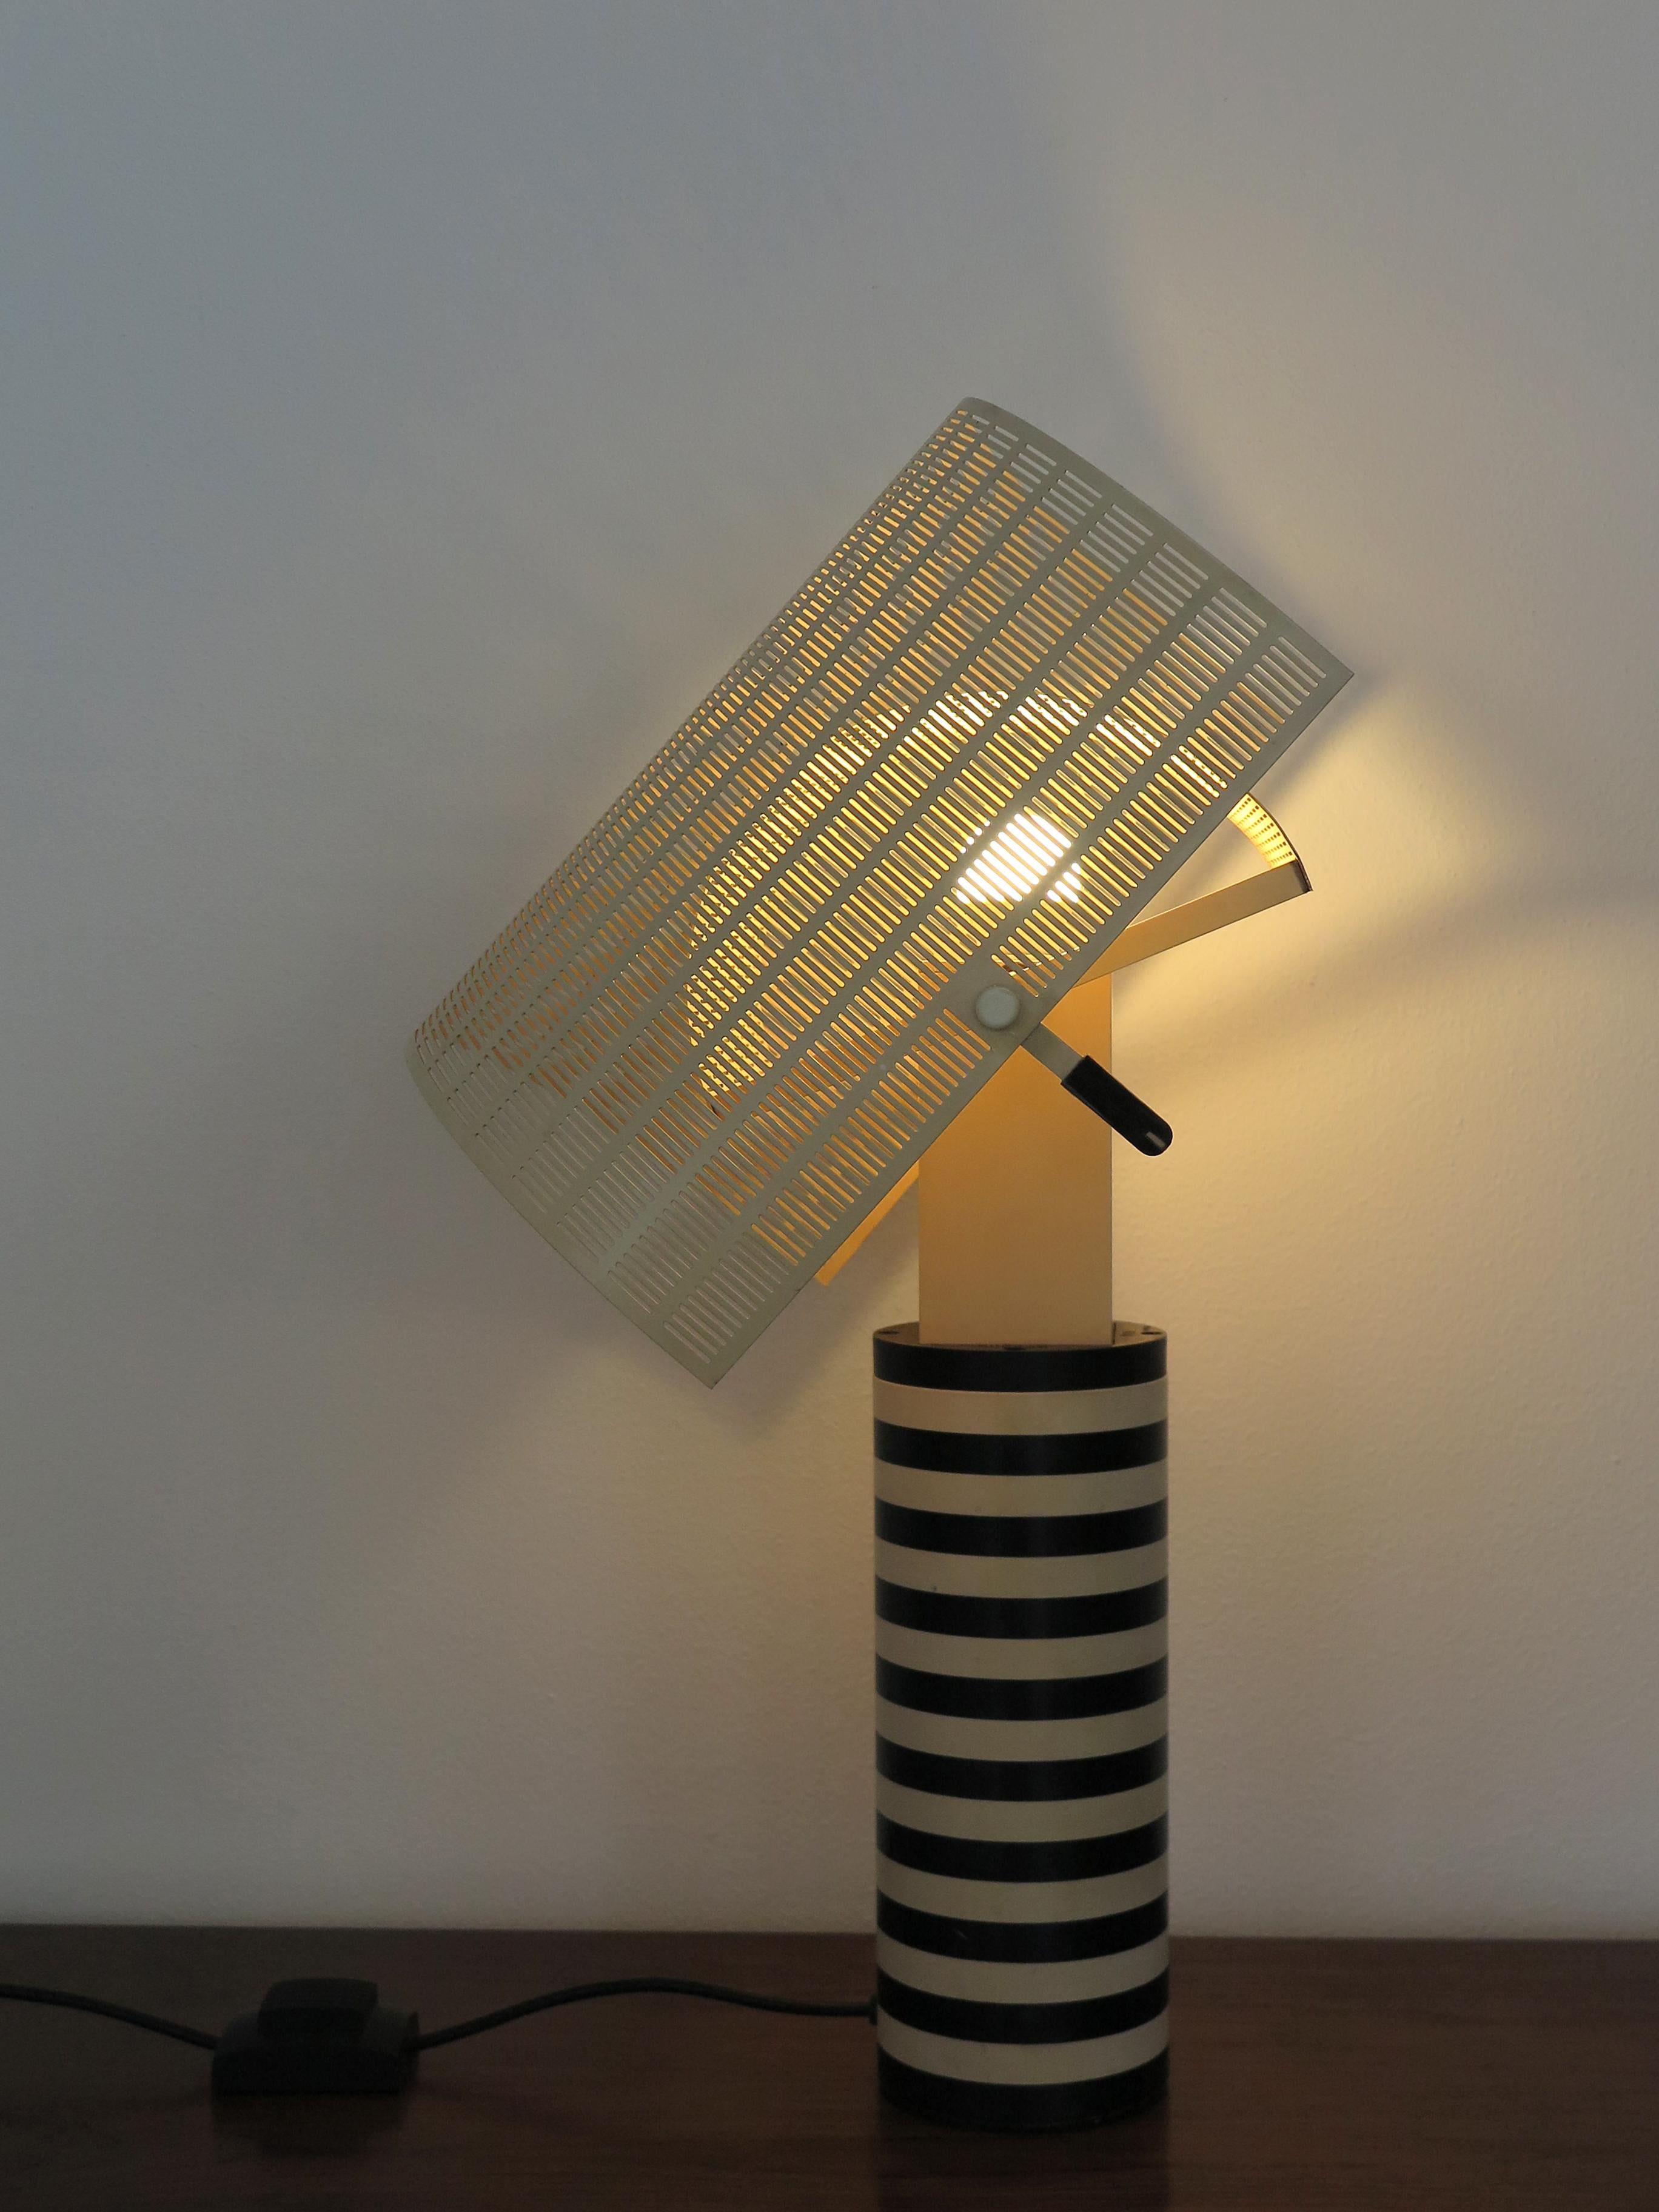 Lampe italienne Shogung conçue par Mario Botta pour Artemide dans les années 1980, avec tige en métal peint en blanc et noir, diffuseurs ajustables en tôle d'acier perforée peinte en blanc, première production dans les années 1980.
Signé sur la base